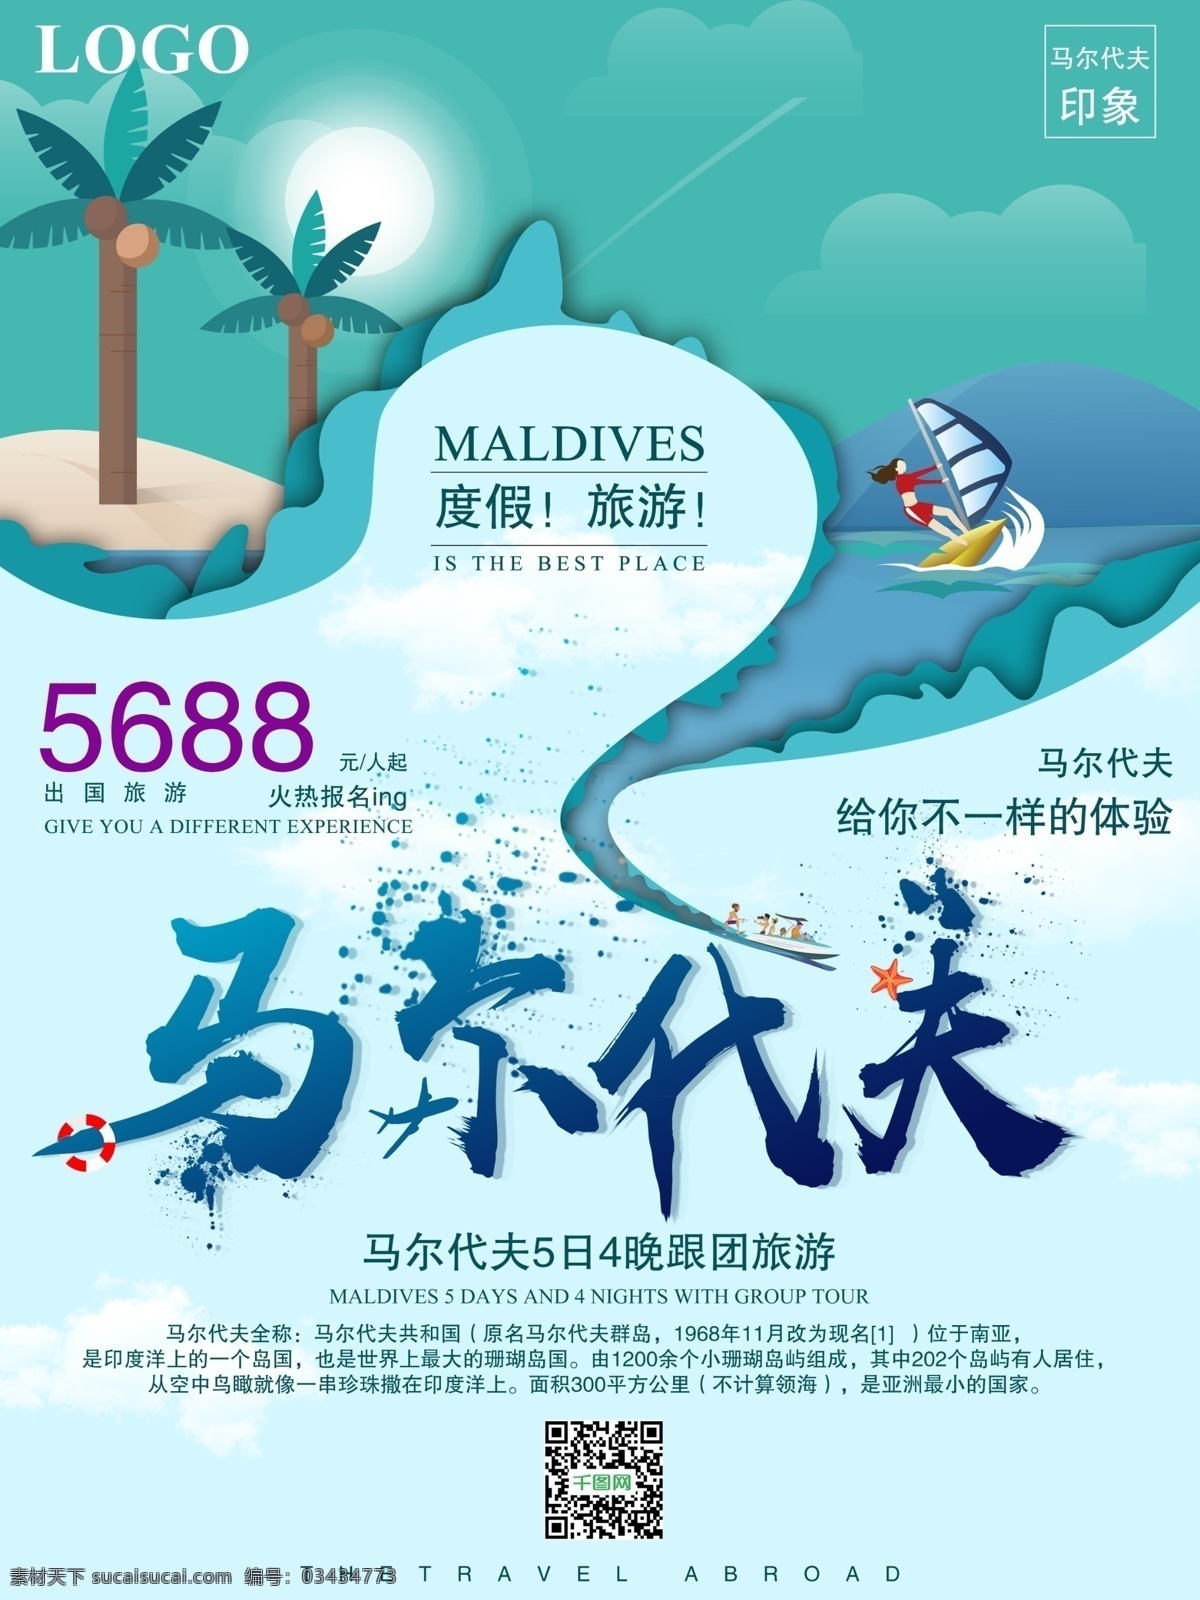 简约 清新 马尔代夫 旅游 宣传海报 旅行 小清新 冲浪 马尔代夫印象 海边旅游